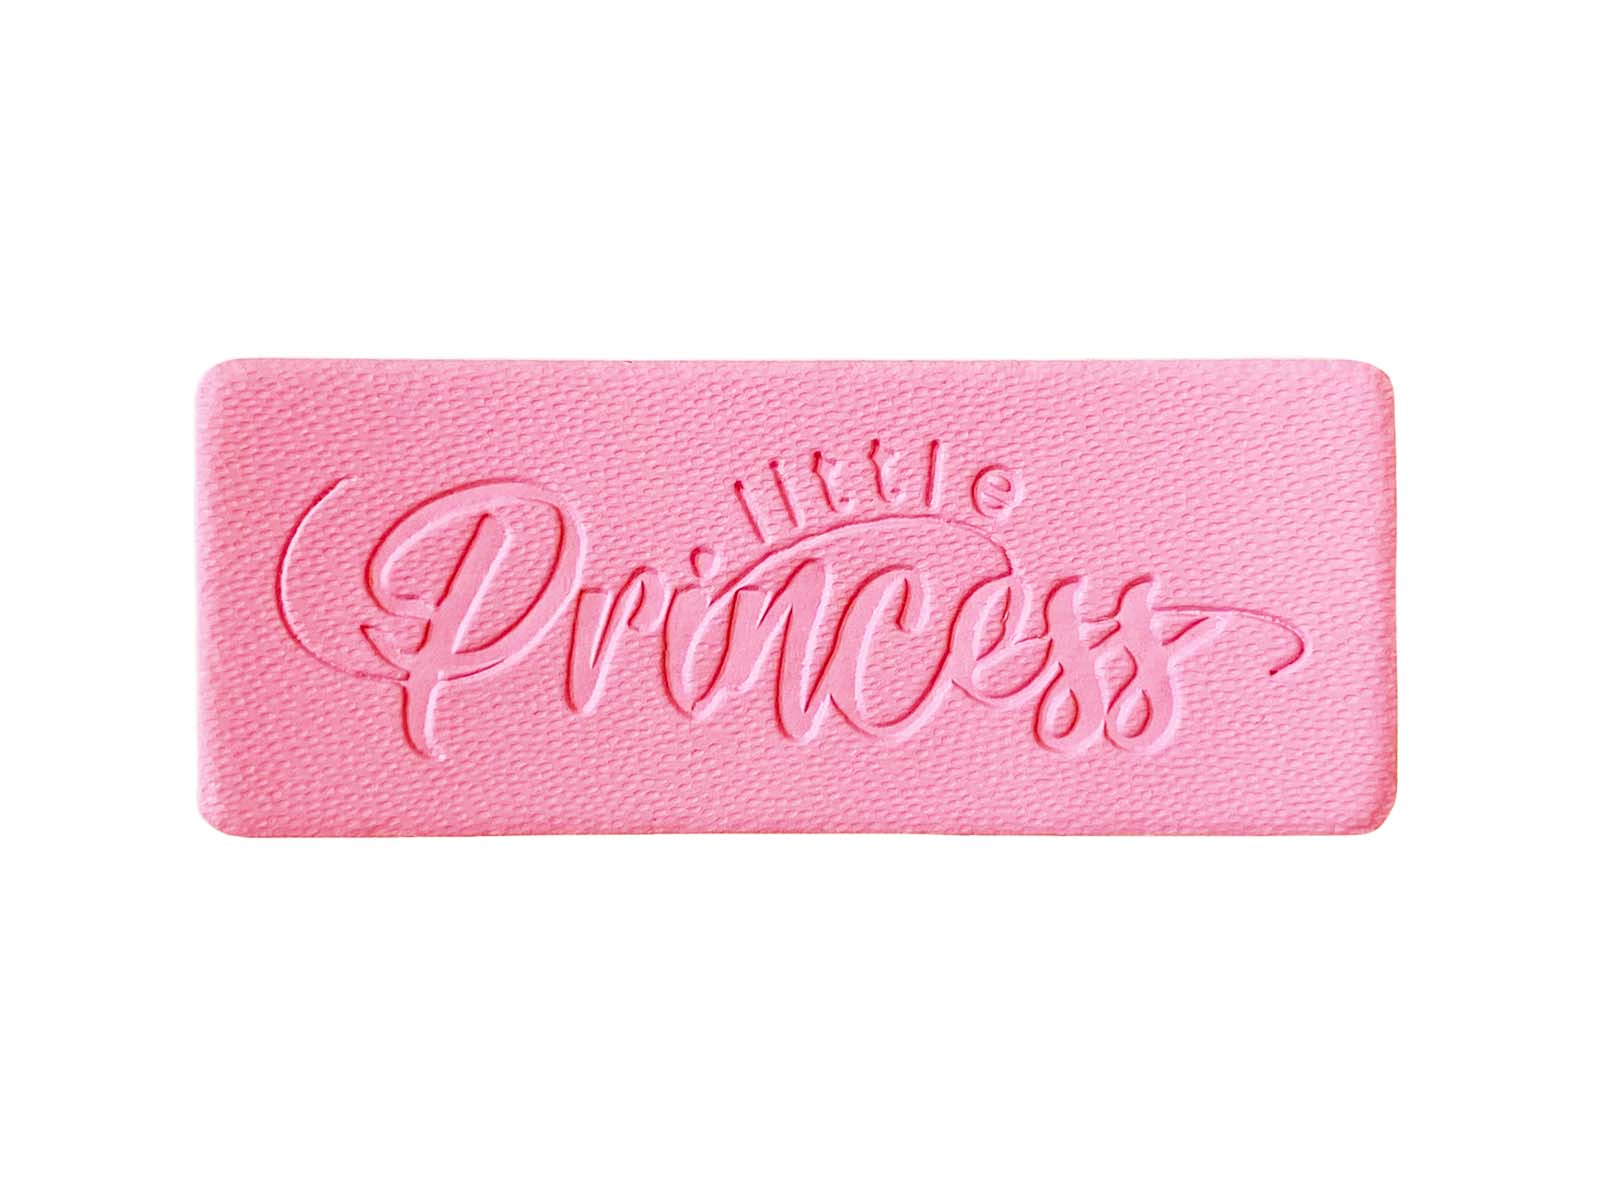 Label aus Kunstleder - "Little Princess" in rosa